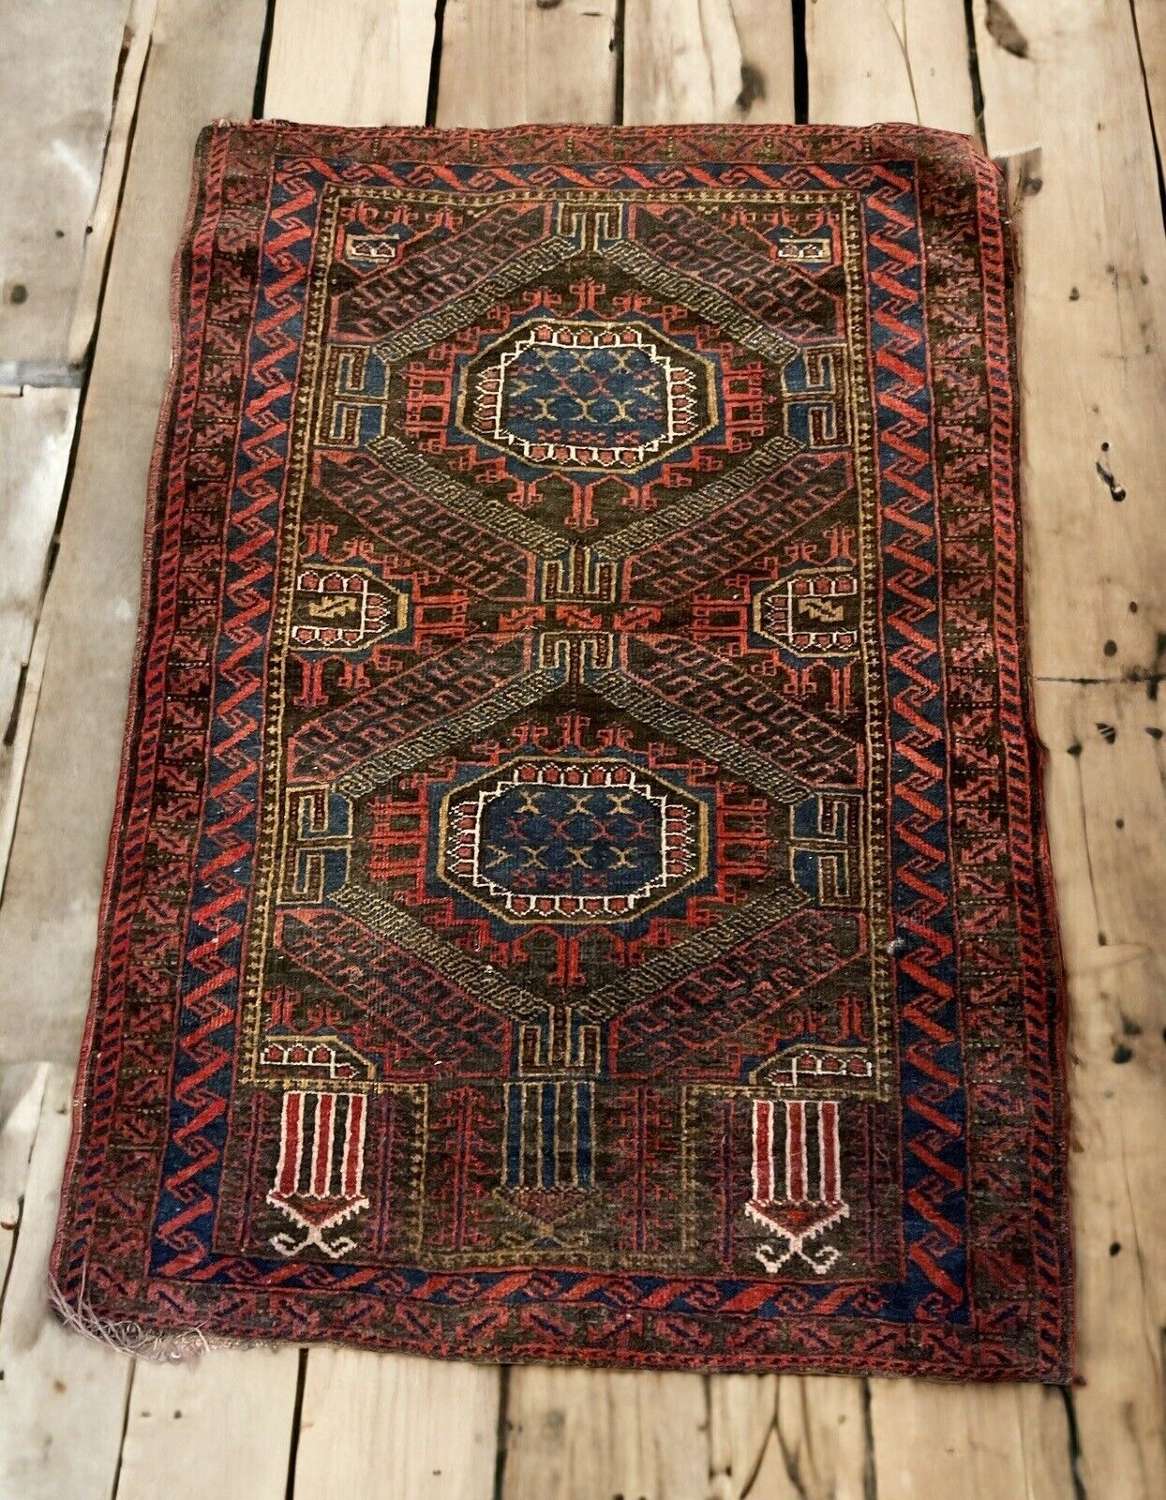 Antique Persian Baluch rug circa 1900